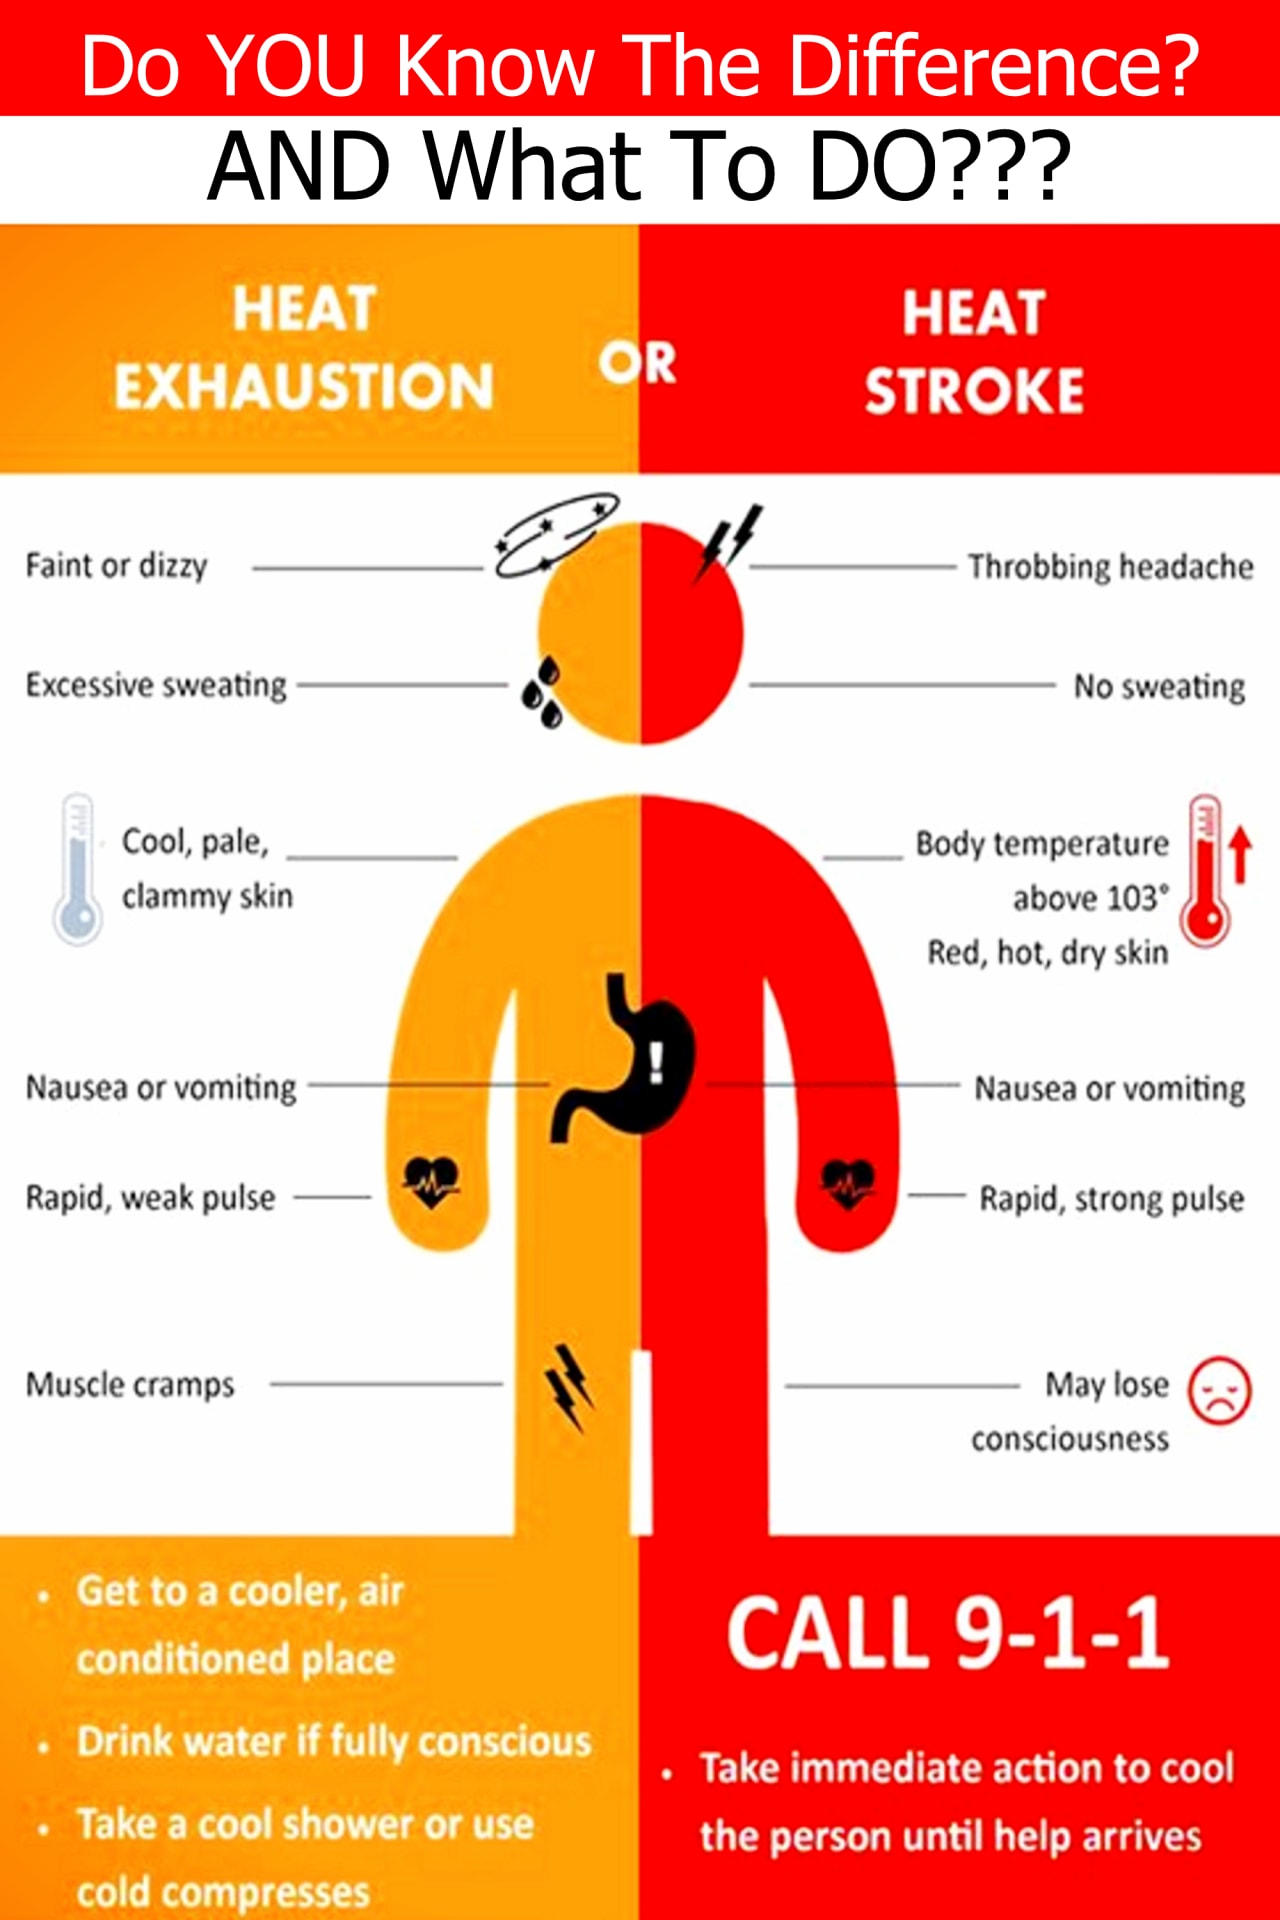 Heat stroke vs heat exhaustion